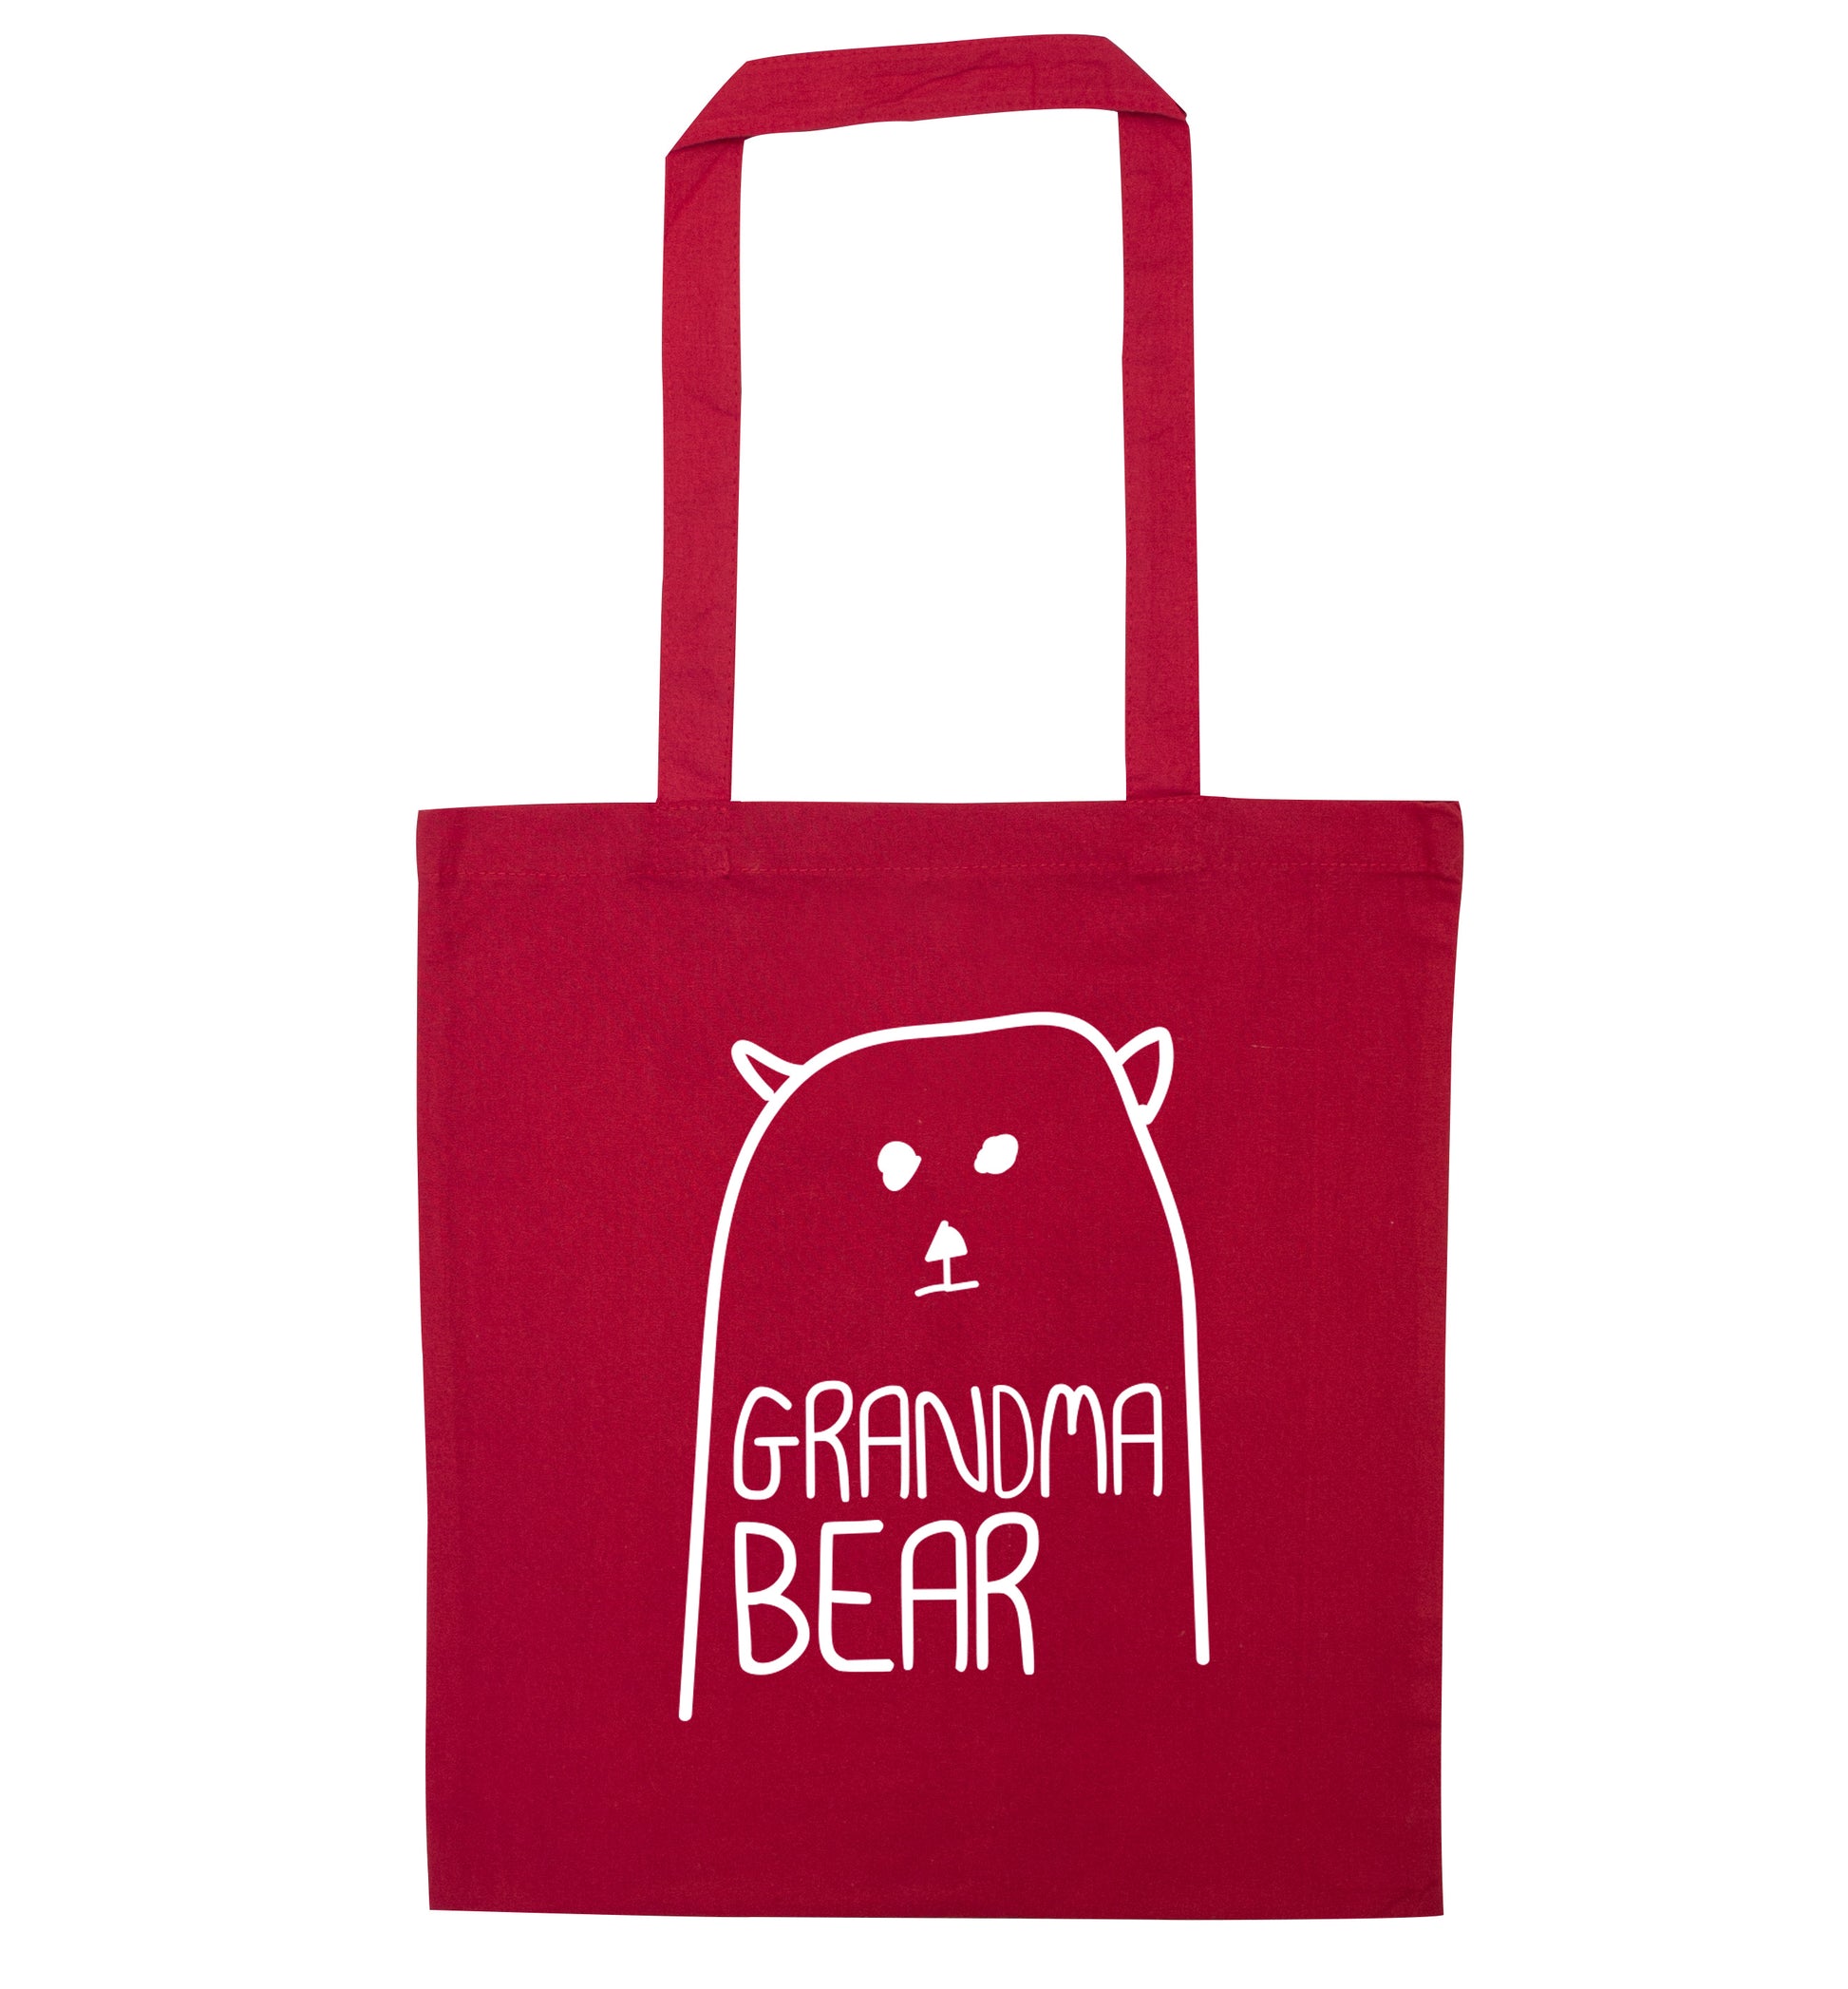 Grandma bear red tote bag